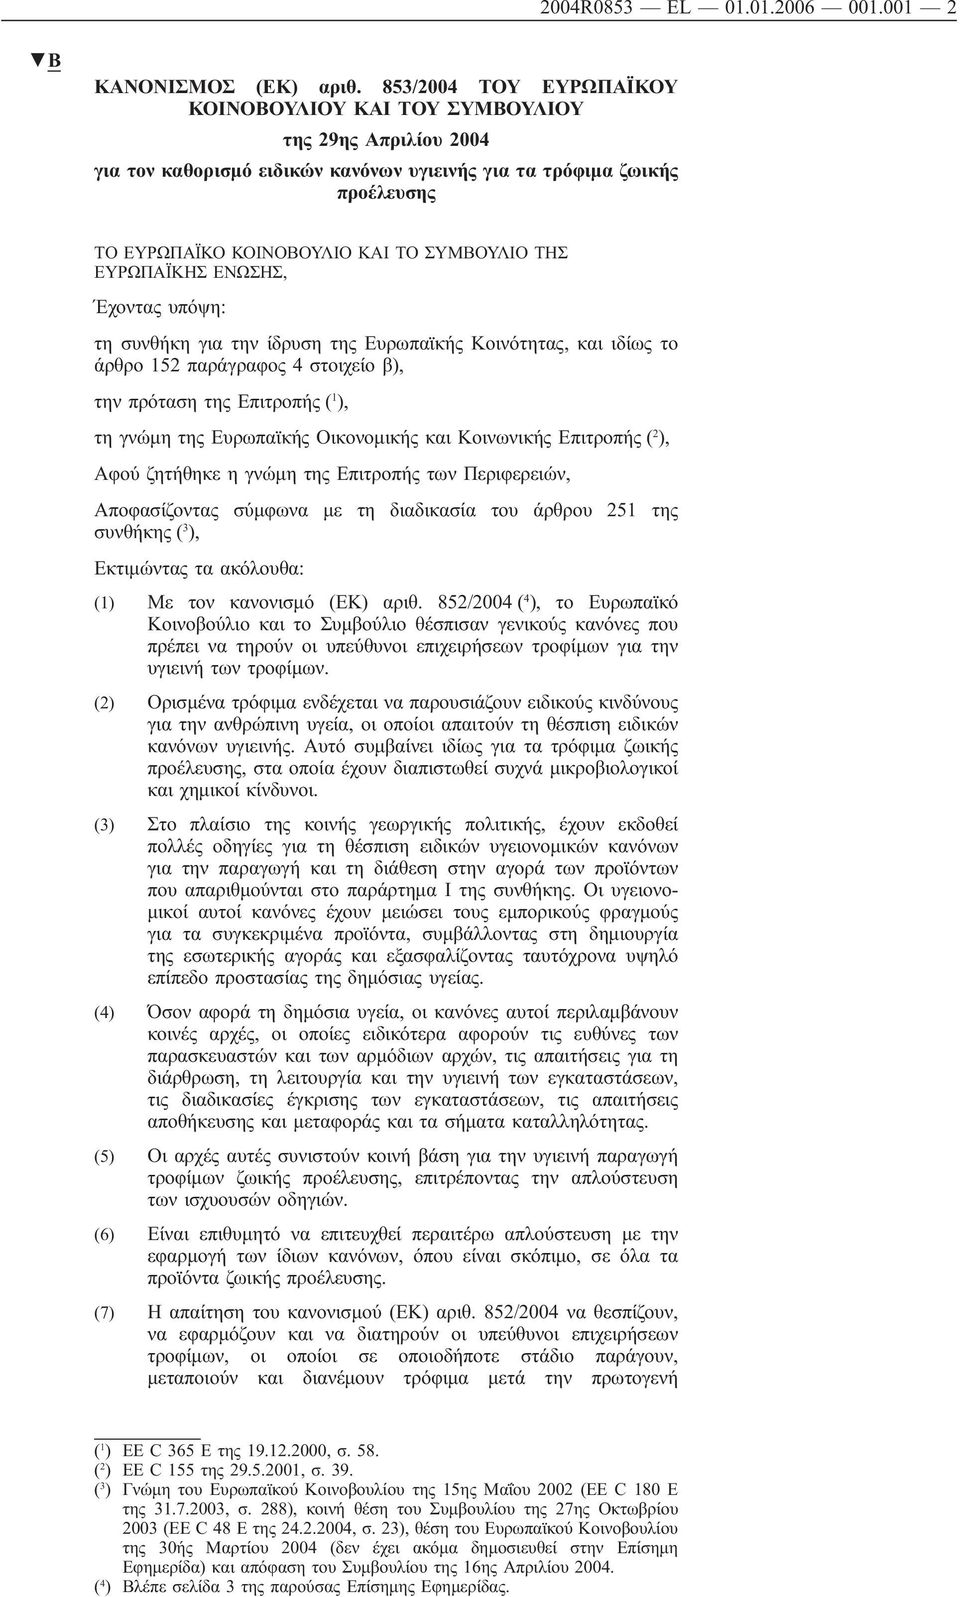 ΤΗΣ ΕΥΡΩΠΑΪΚΗΣ ΕΝΩΣΗΣ, Έχοντας υπόψη: τη συνθήκη για την ίδρυση της Ευρωπαϊκής Κοινότητας, ιδίως το άρθρο 152 παράγραφος 4 στοιχείο β), την πρόταση της Επιτροπής ( 1 ), τη γνώμη της Ευρωπαϊκής